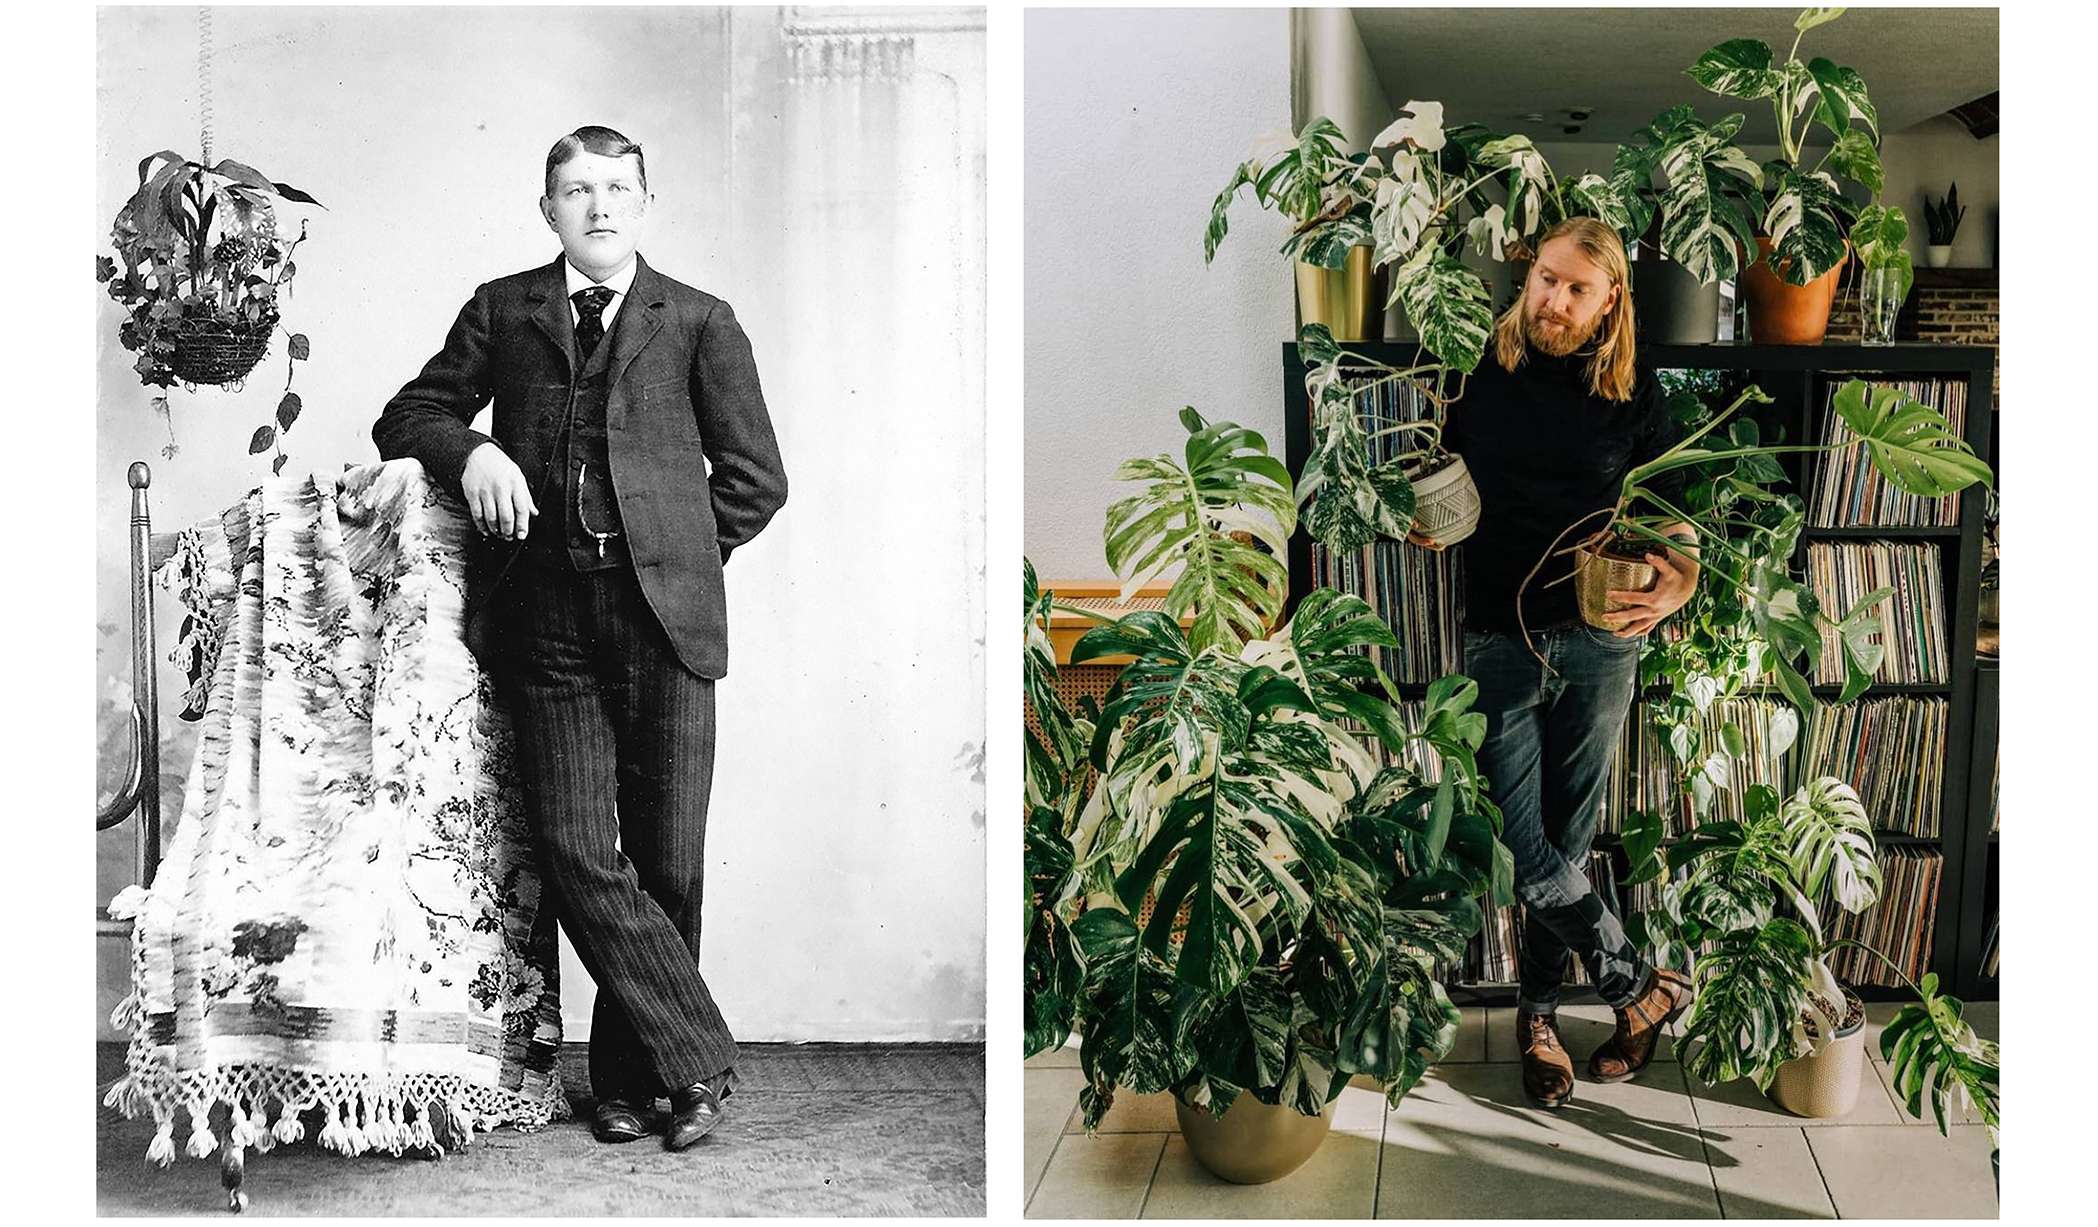 links: Unbekannte Person. Schweden. Circa 1910   rechts:  Familienporträt #MonsteraMonday von @kristofcales auf @urbanjunglebloggers. 2021